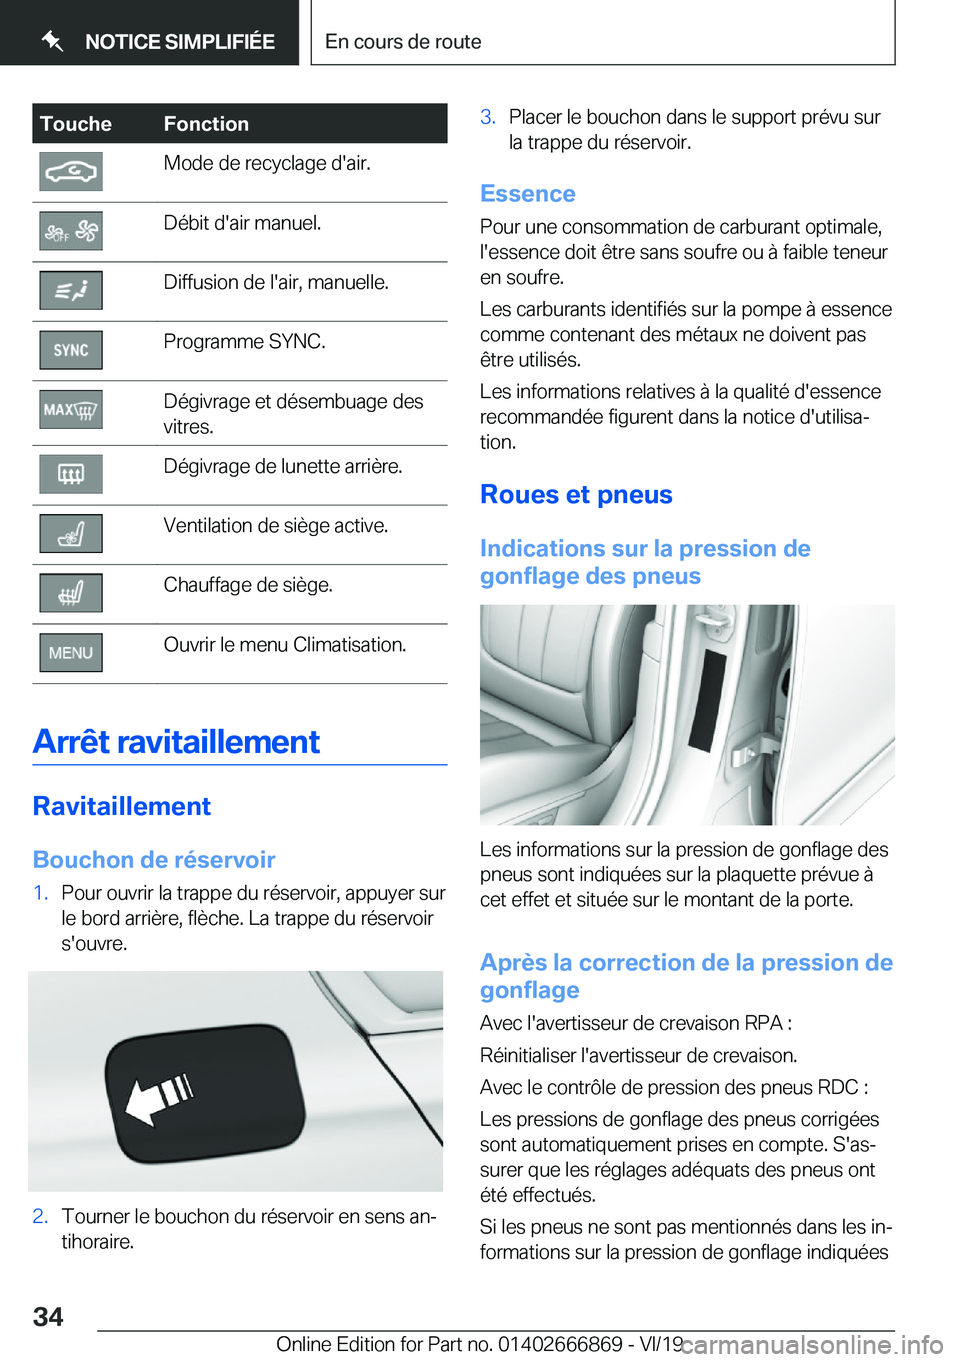 BMW X4 M 2020  Notices Demploi (in French) �T�o�u�c�h�e�F�o�n�c�t�i�o�n�M�o�d�e��d�e��r�e�c�y�c�l�a�g�e��d�'�a�i�r�.�D�é�b�i�t��d�'�a�i�r��m�a�n�u�e�l�.�D�i�f�f�u�s�i�o�n��d�e��l�'�a�i�r�,��m�a�n�u�e�l�l�e�.�P�r�o�g�r�a�m�